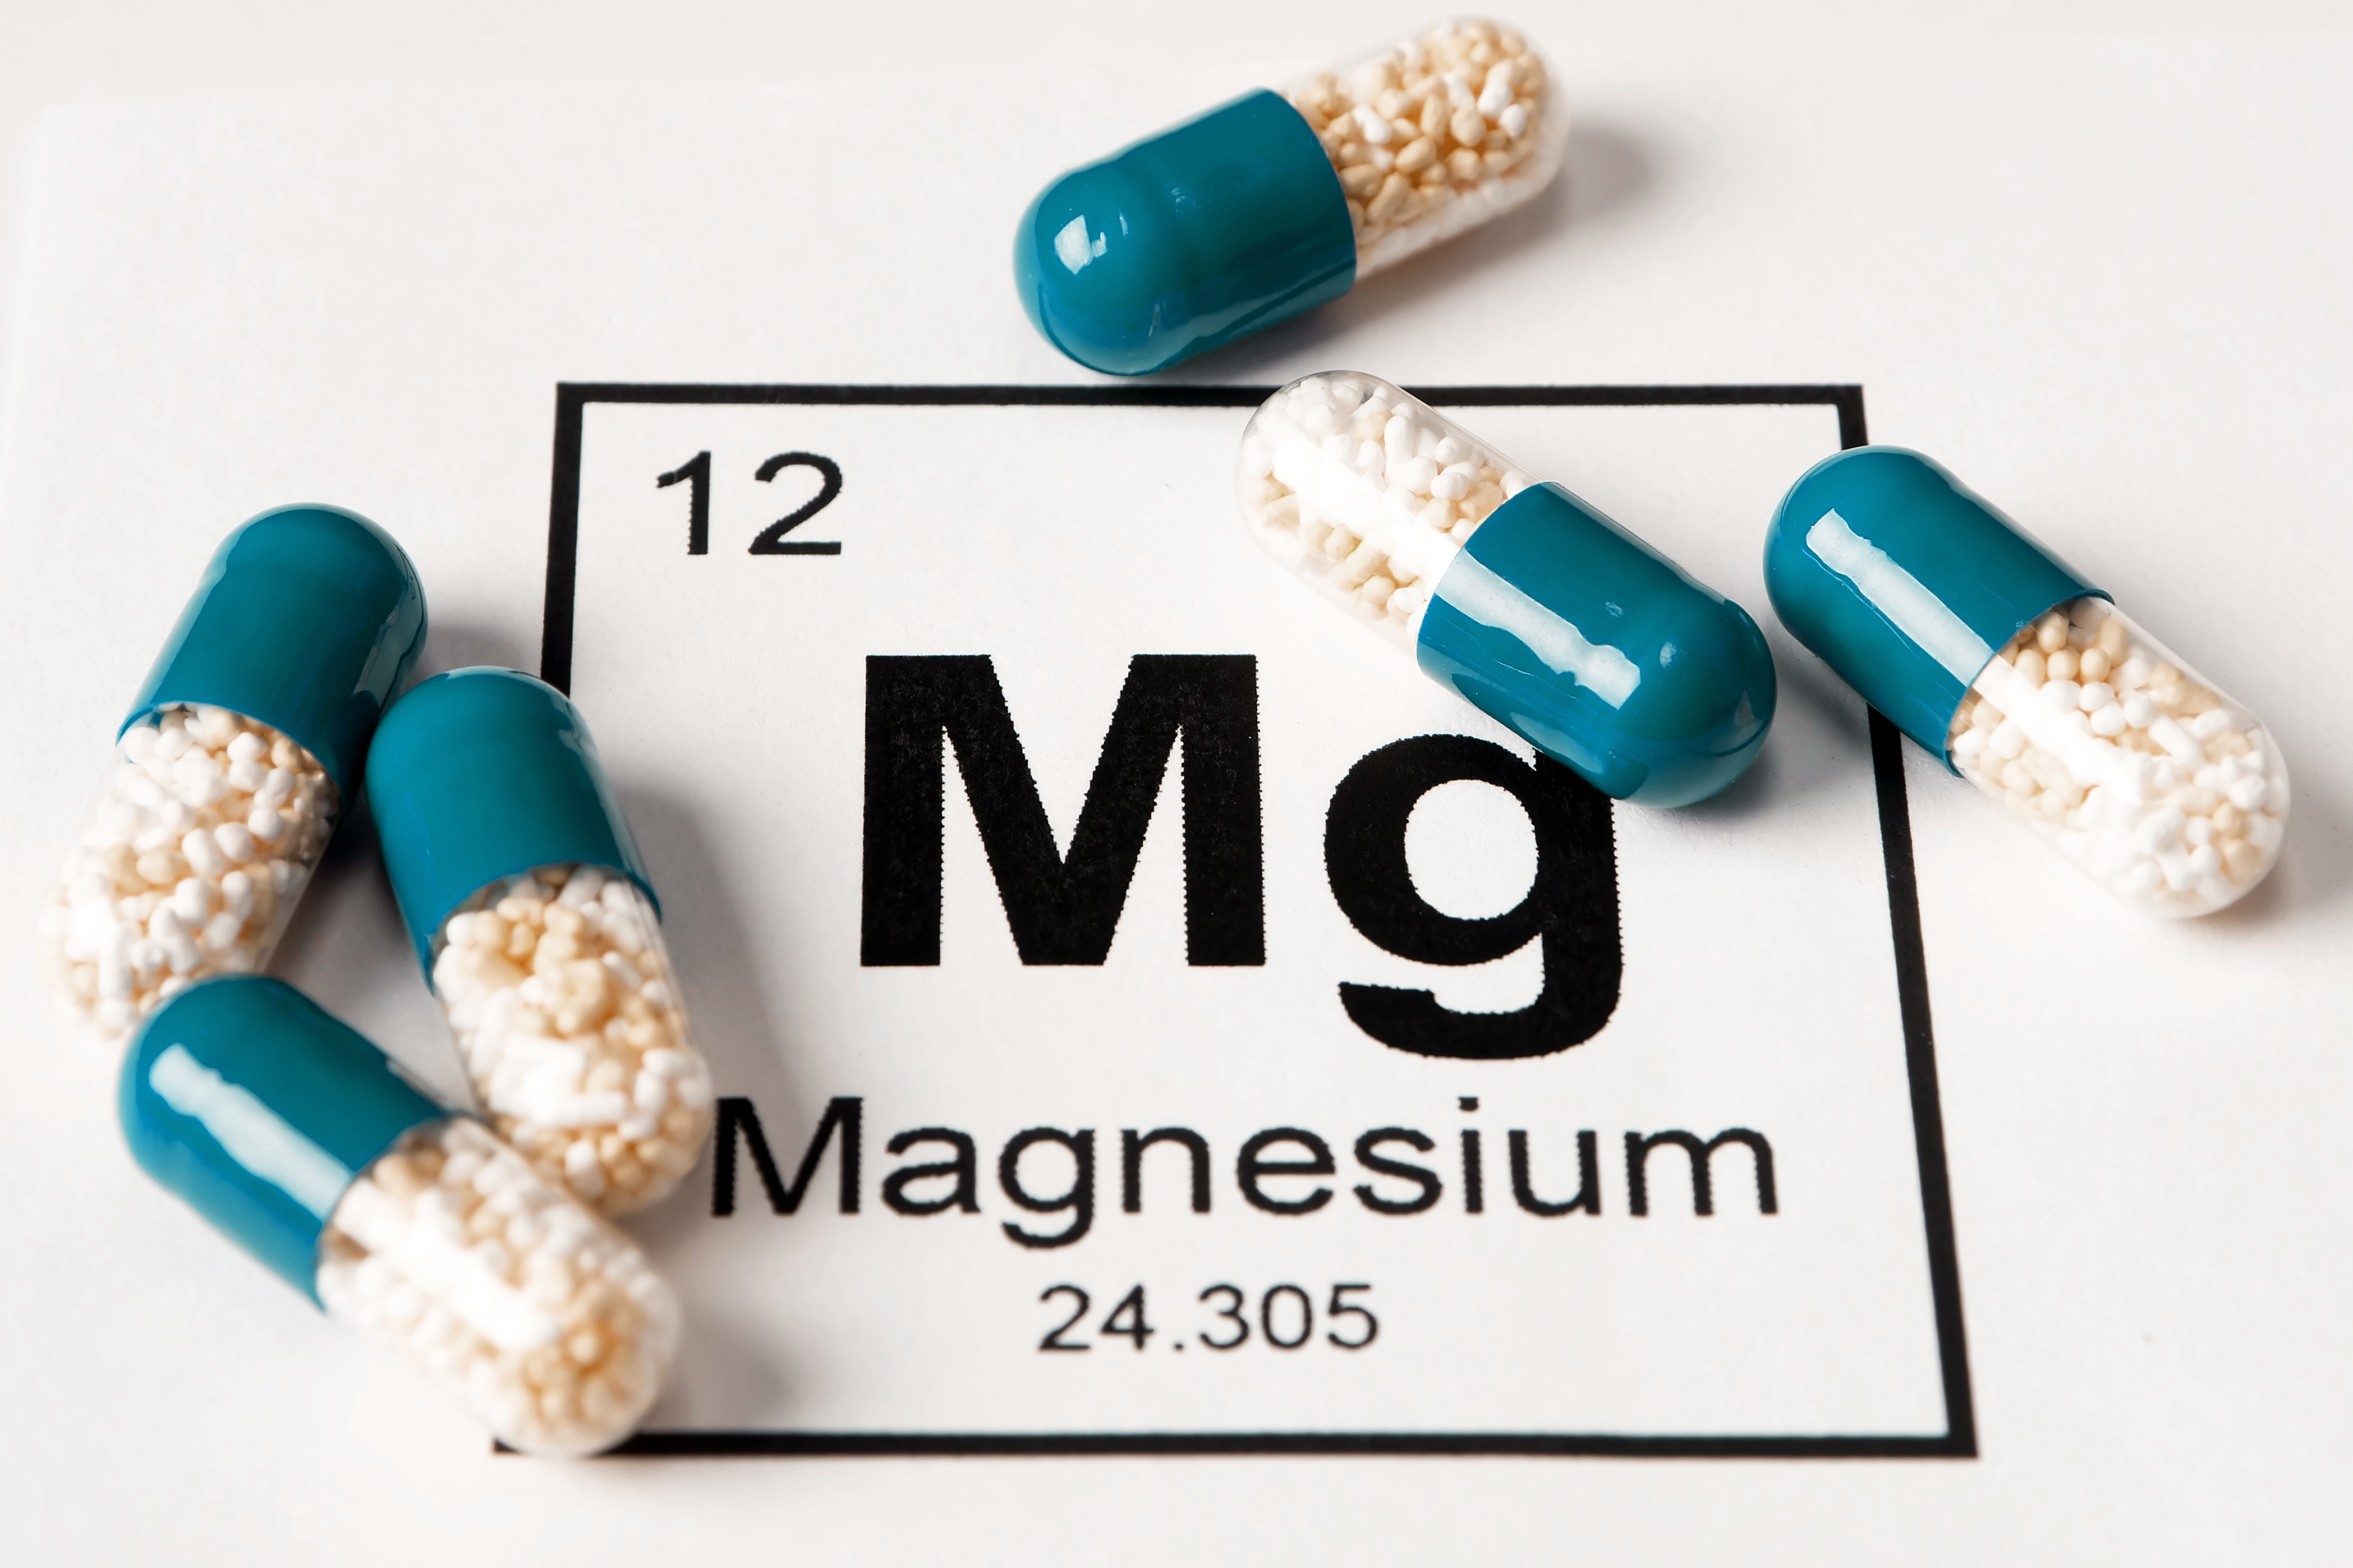 Le magnésium est un micronutriment d'une importance fondamentale pour notre organisme. © Dmitriy, Adobe Stock